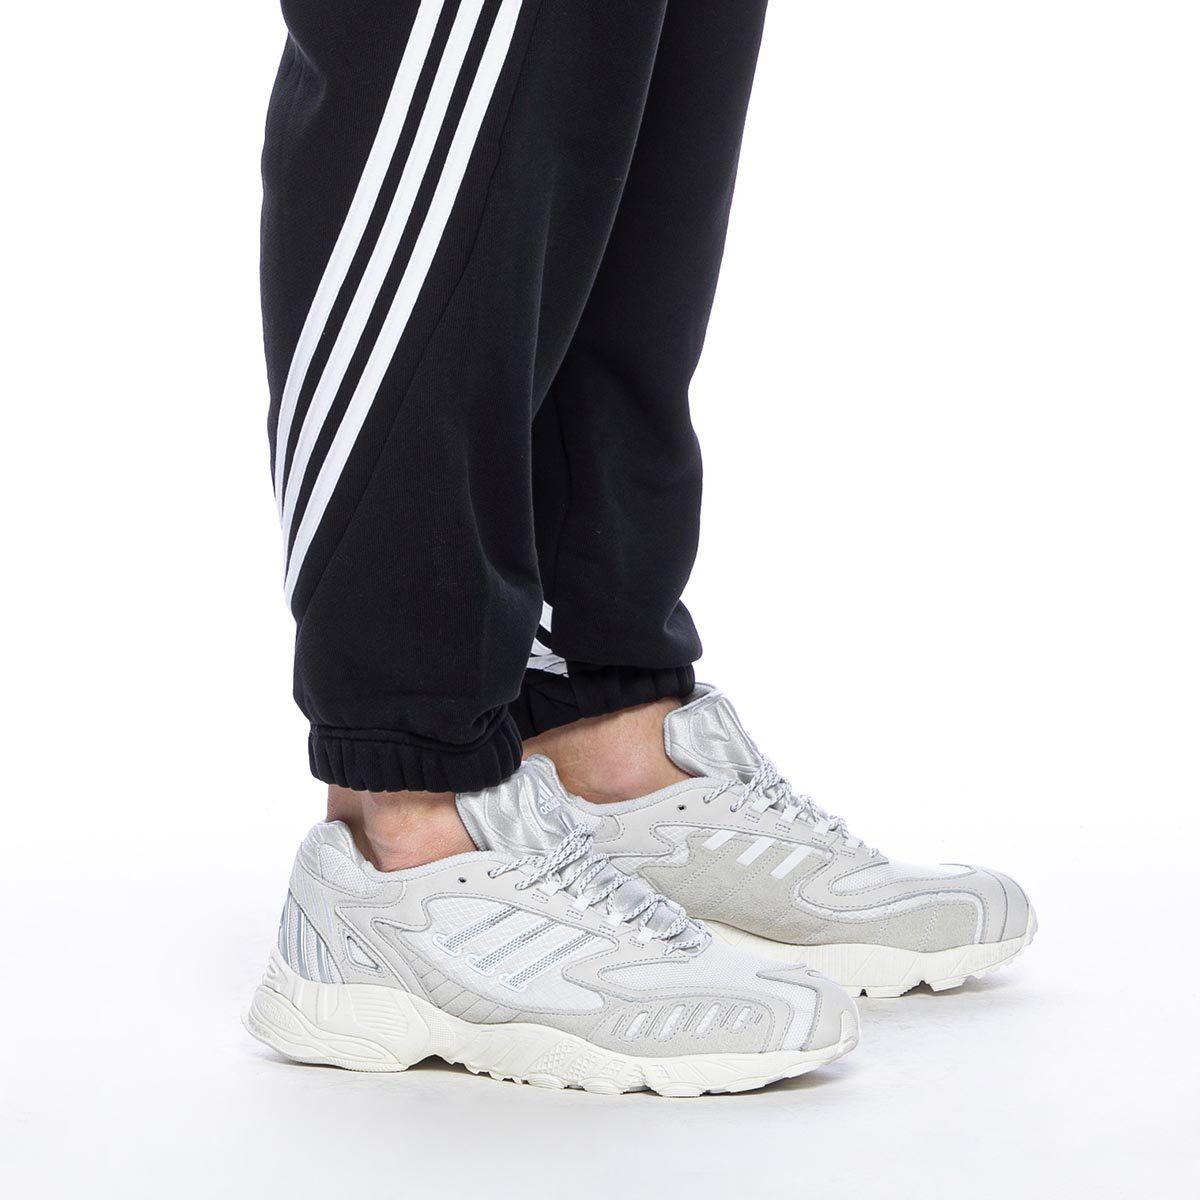 adidas originals beckenbauer joggers 3 stripes white